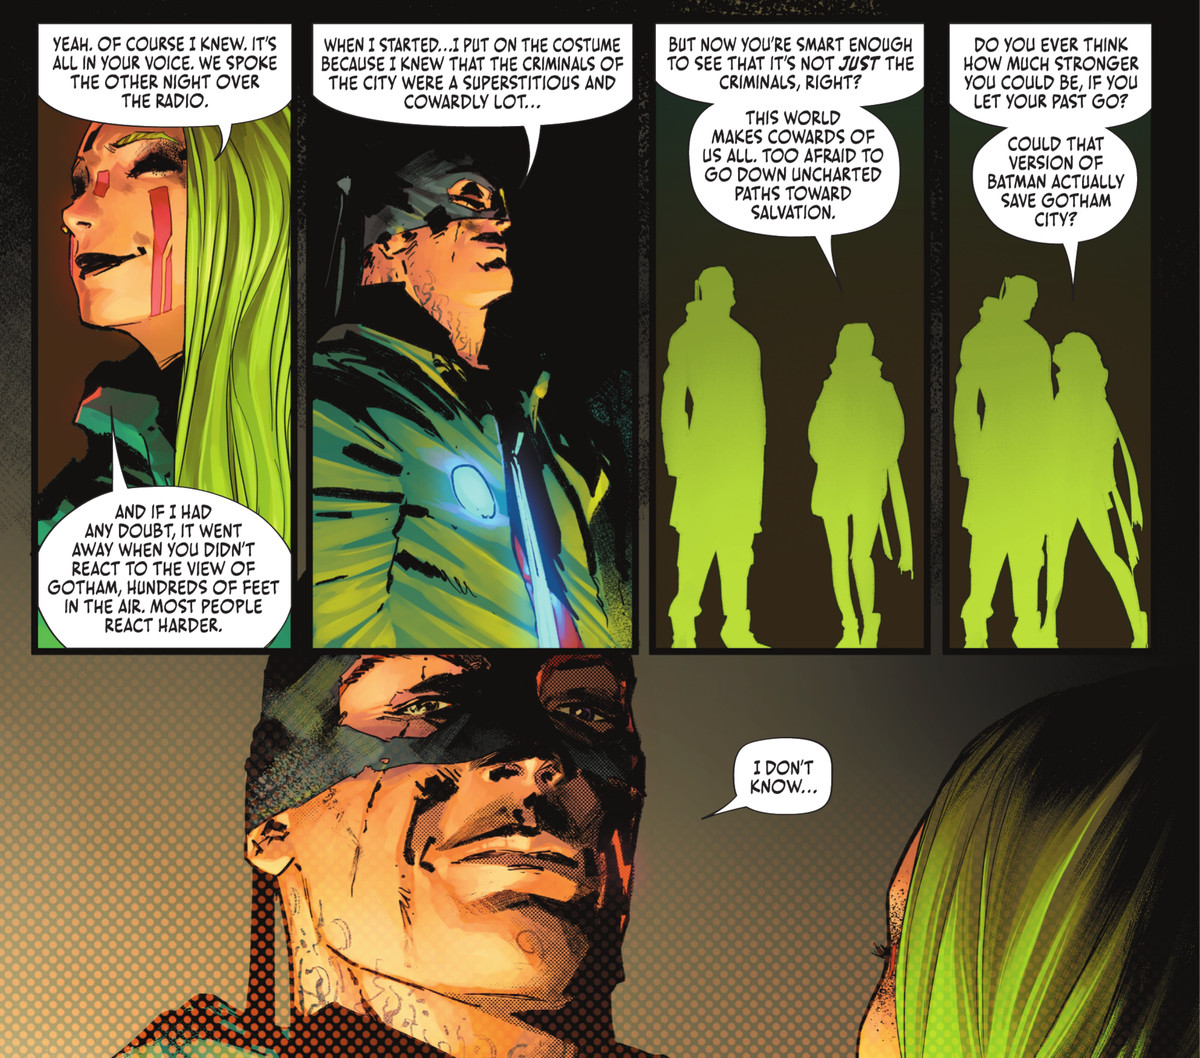 Miracle Molly of the Unsanity Collective chiede a un Batman travestito se ha mai considerato quanto sarebbe più forte nei panni del Cavaliere Oscuro se lasciasse andare il suo passato in Batman # 108, DC Comics (2021). 